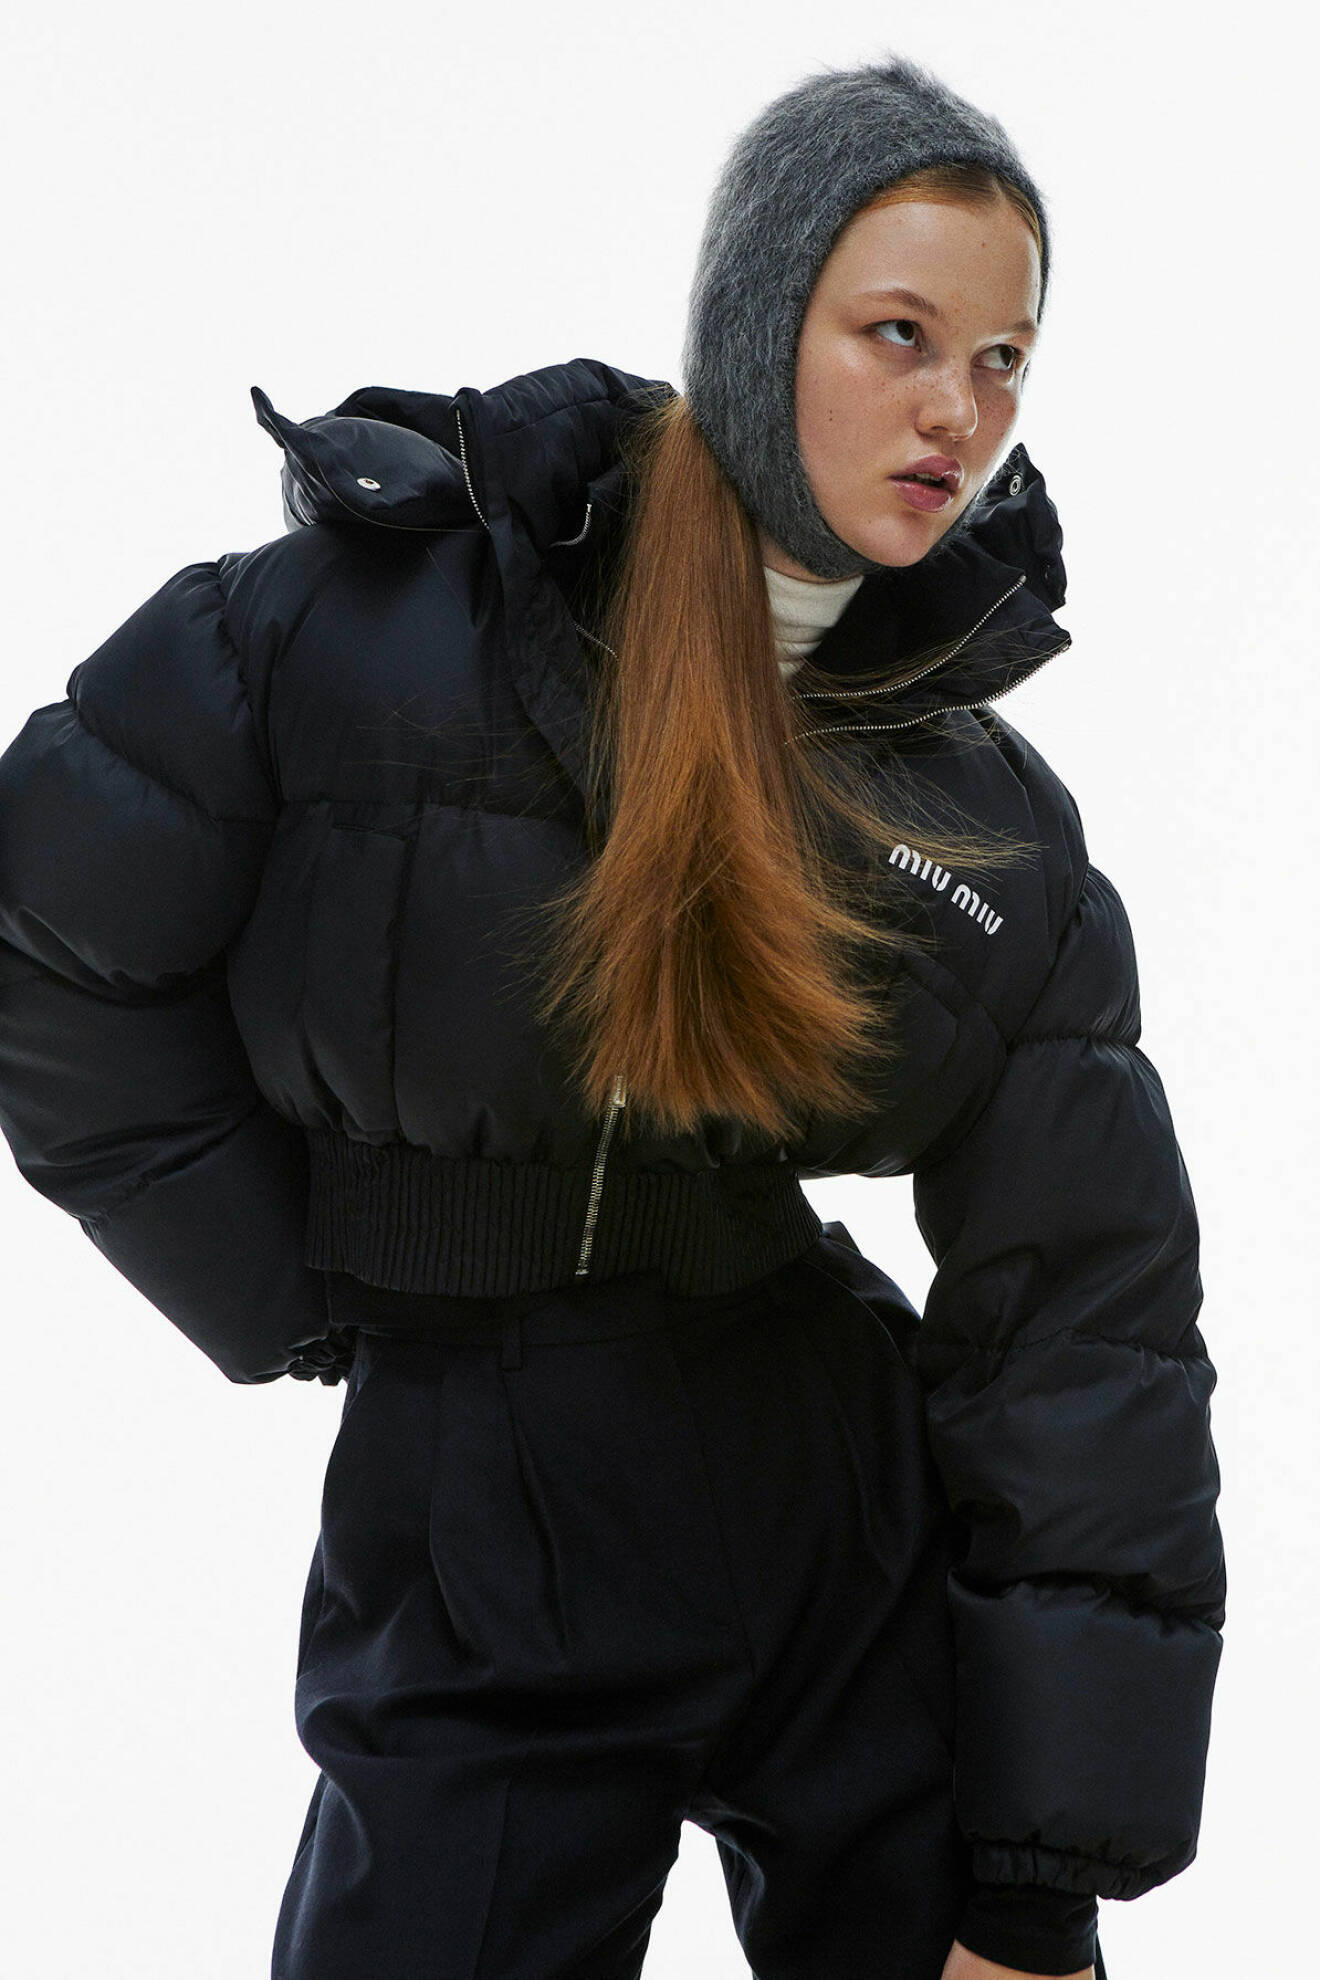 Modellen bär en svart, kort vinterjacka med en grå balaklava